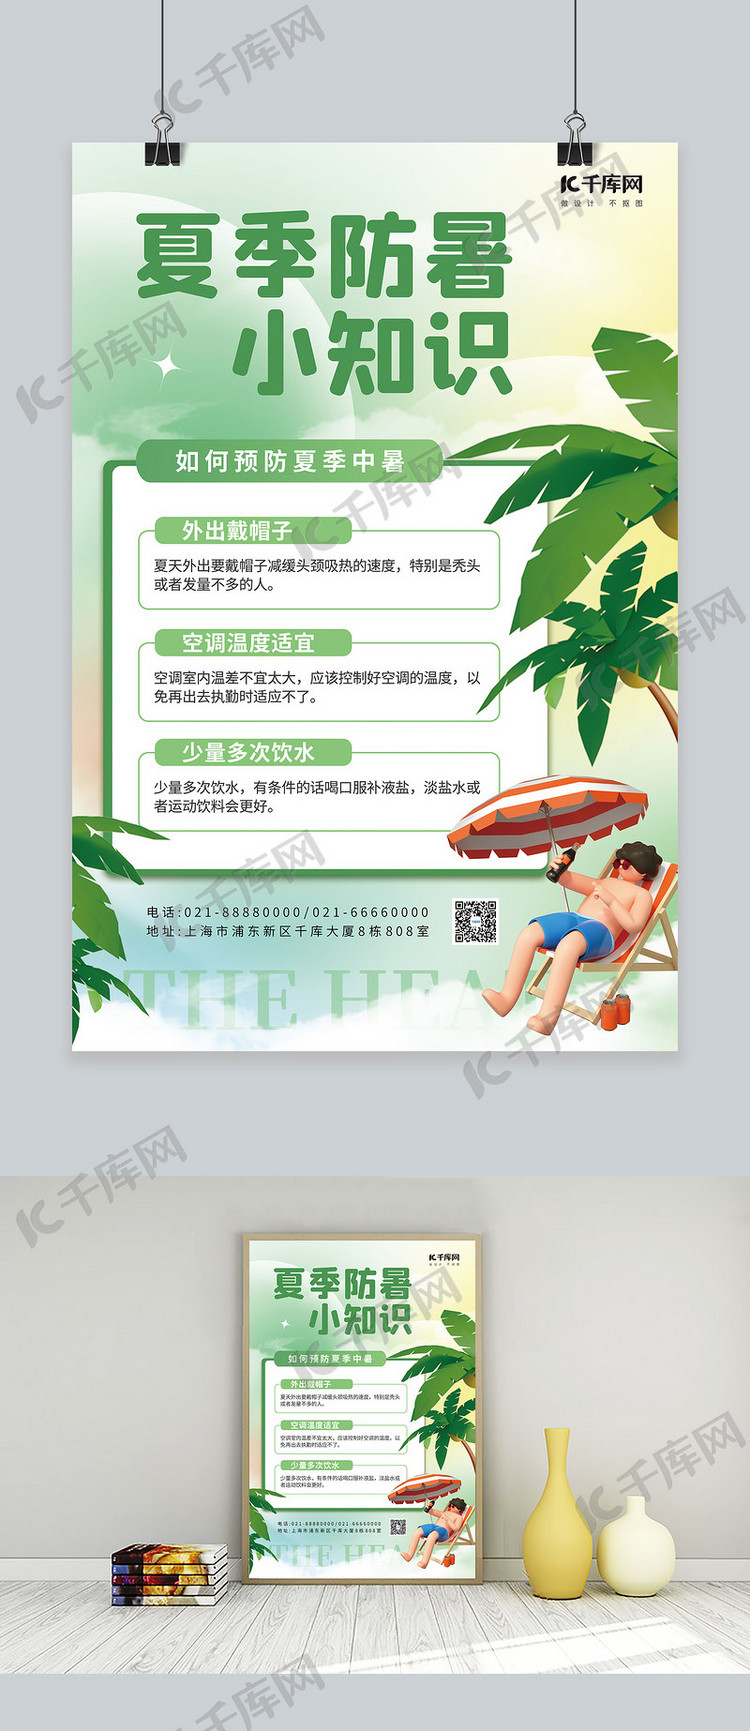 夏季防暑小知识3D人物椰子树绿简约海报